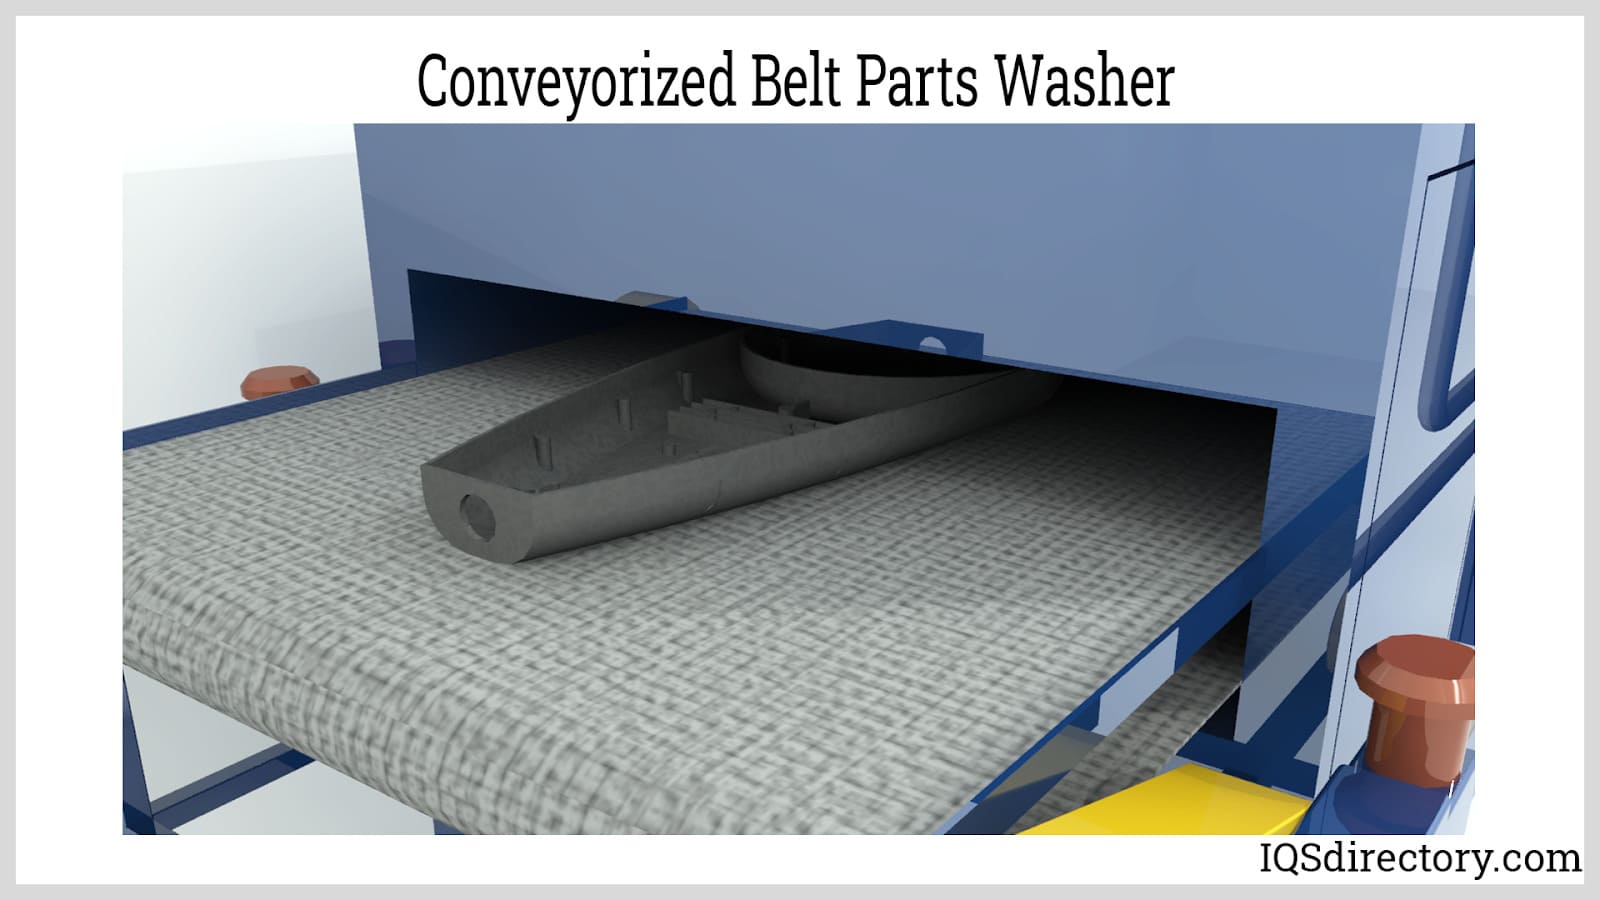 Conveyorized Belt Parts Washer